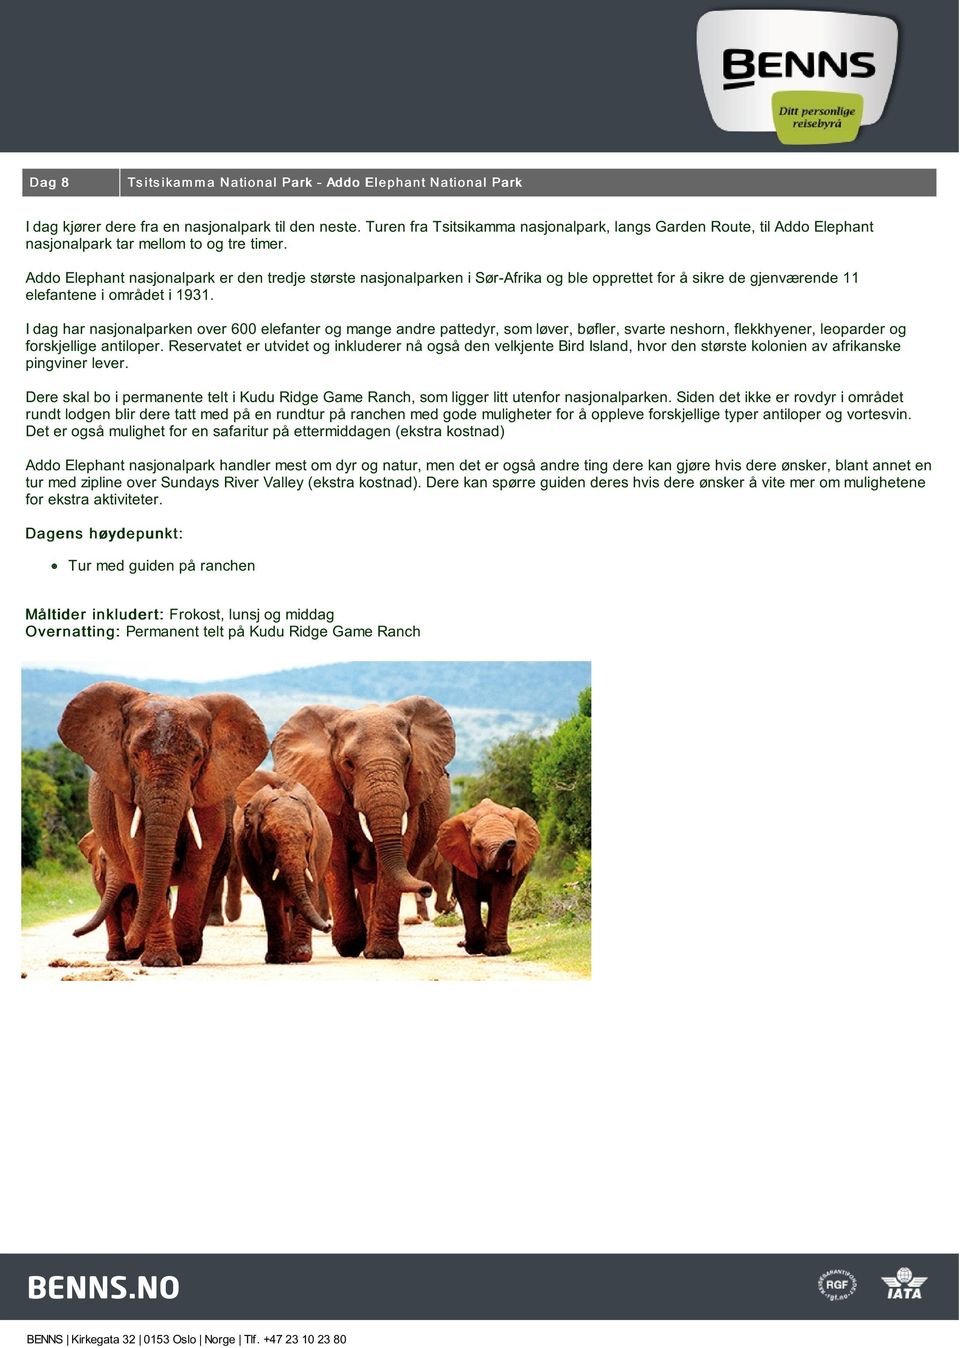 Addo Elephant nasjonalpark er den tredje største nasjonalparken i Sør-Afrika og ble opprettet for å sikre de gjenværende 11 elefantene i området i 1931.